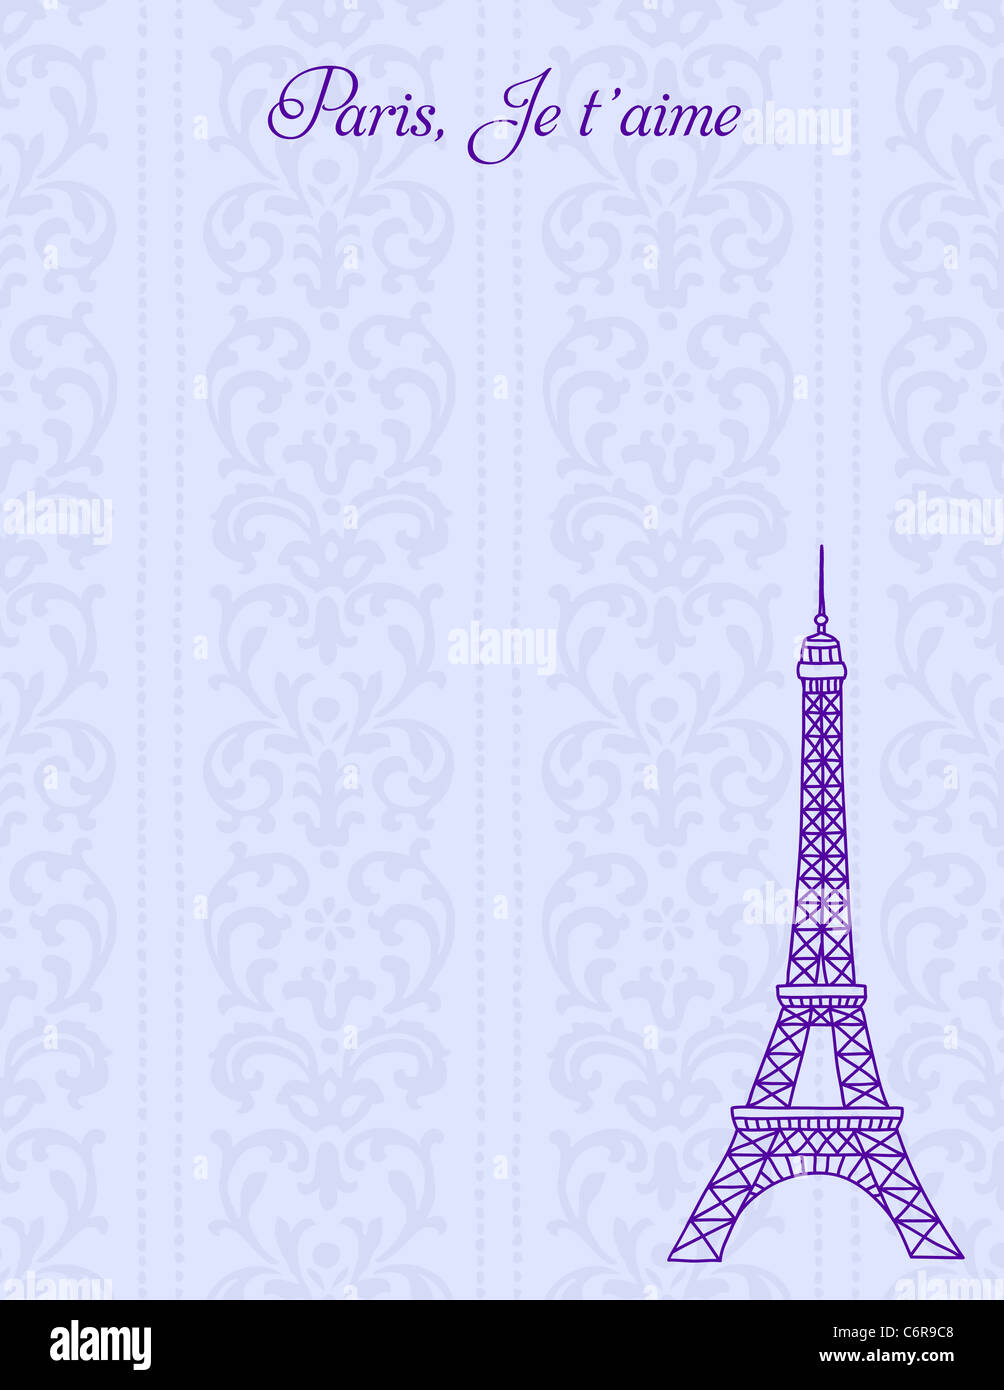 Eiffel Tower illustration Stock Photo